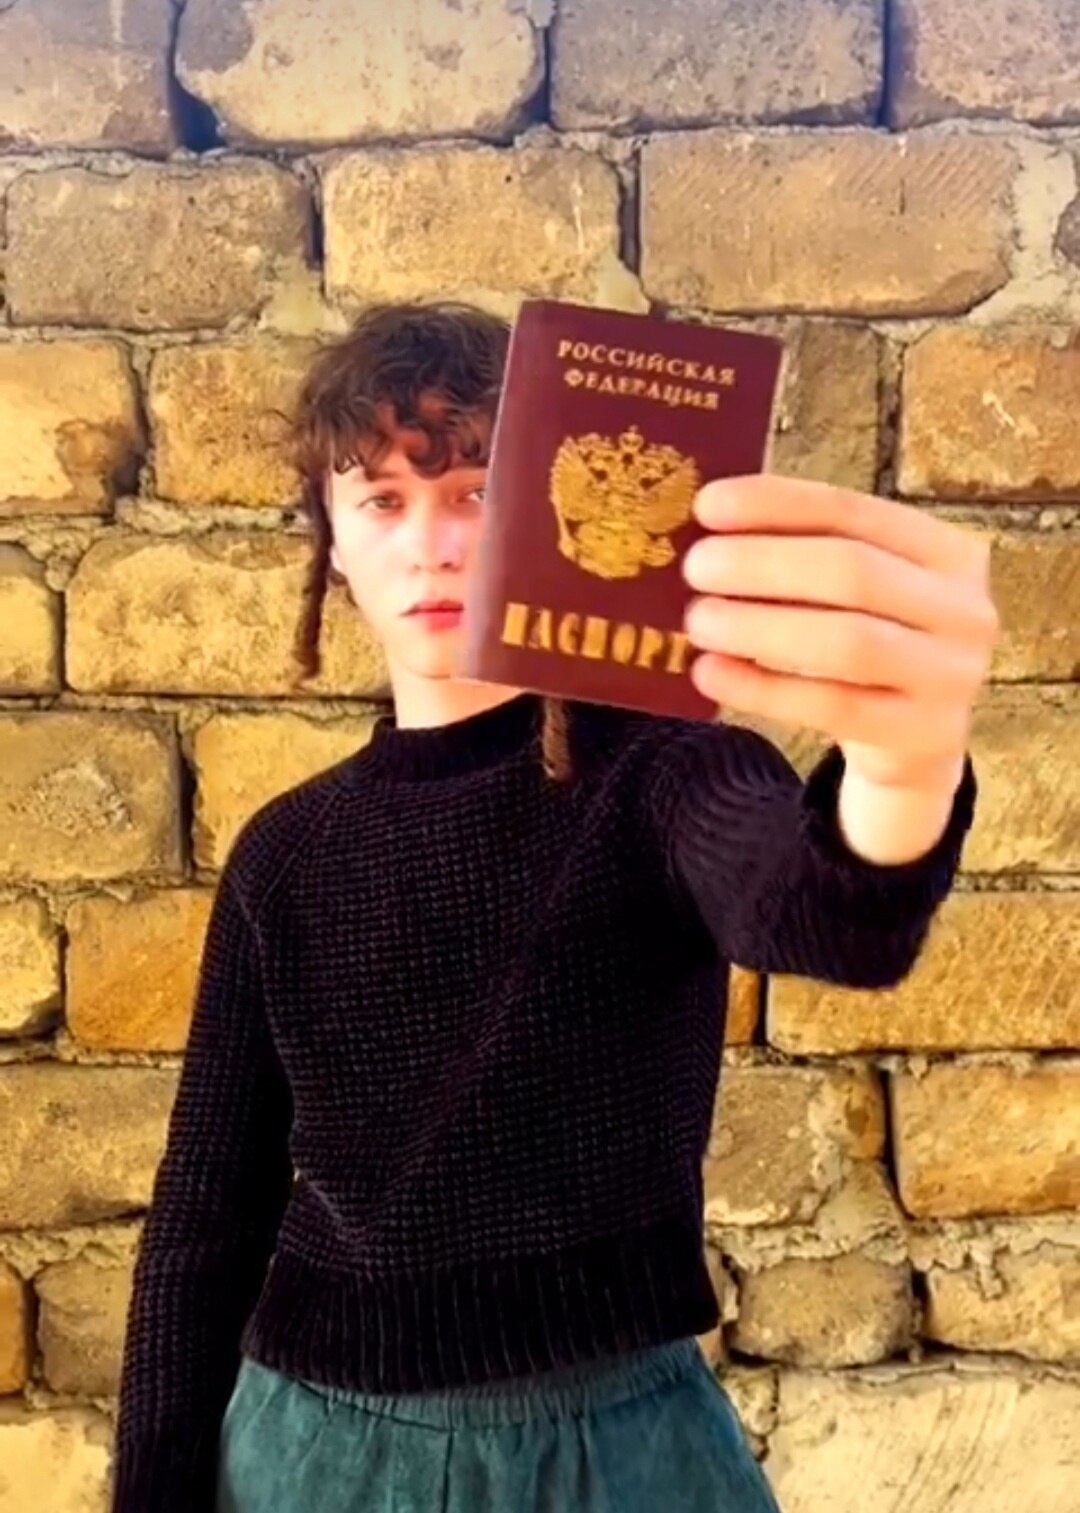 "Это глупость": певец Шарлот публично сжег российский паспорт и пожалел